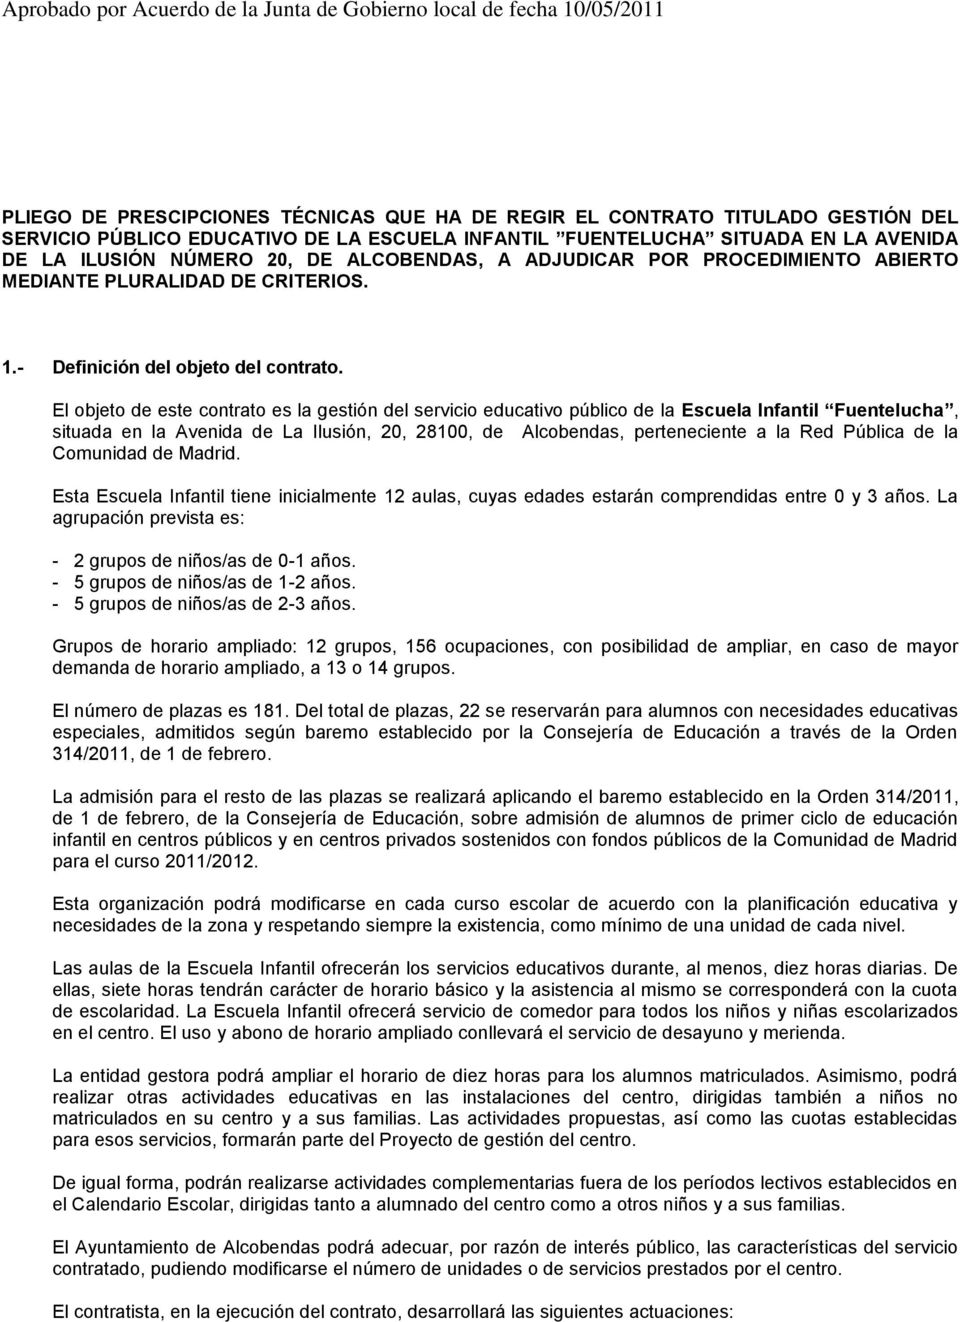 El objeto de este contrato es la gestión del servicio educativo público de la Escuela Infantil Fuentelucha, situada en la Avenida de La Ilusión, 20, 28100, de Alcobendas, perteneciente a la Red